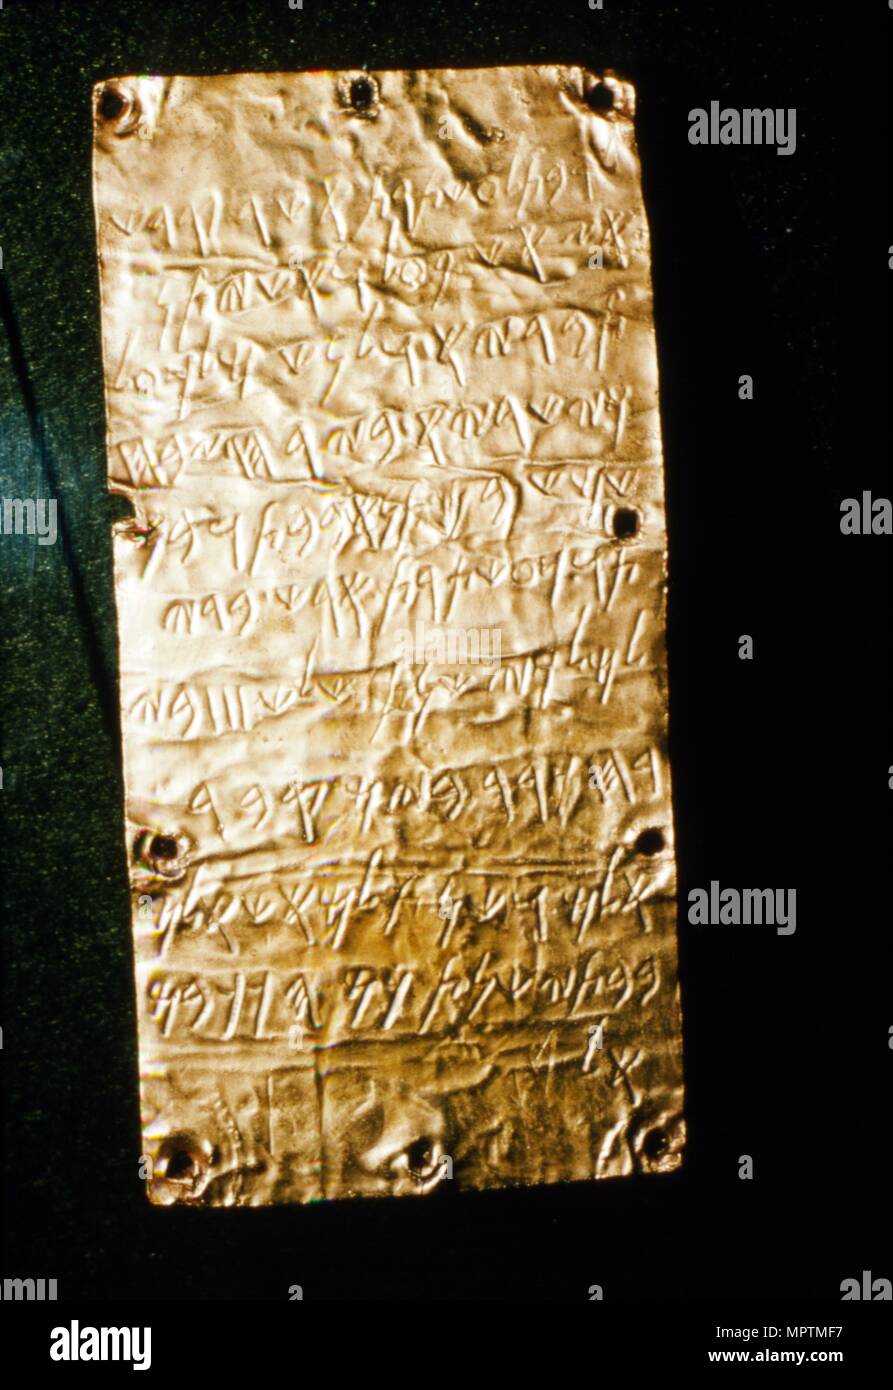 Script étrusque sur la feuille d'or de la Villa Giulia, Rome, fin 6e siècle avant J.-C.- au début du 5e siècle avant J.-C.. Artiste : Inconnu. Banque D'Images